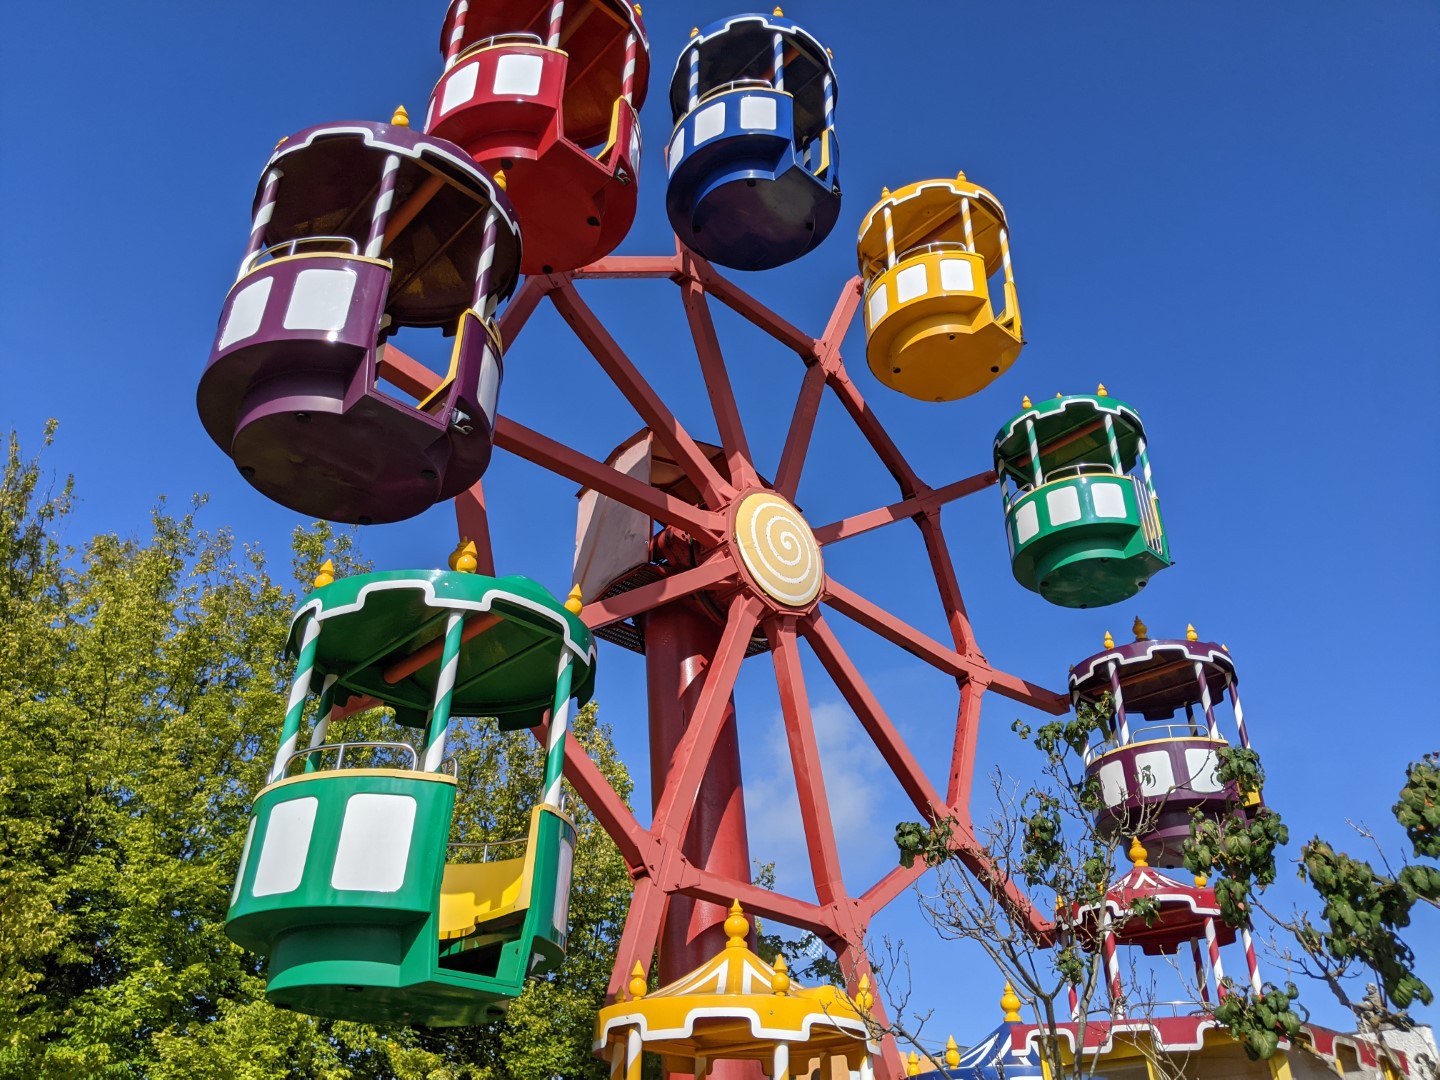 Churzpfalz theme park